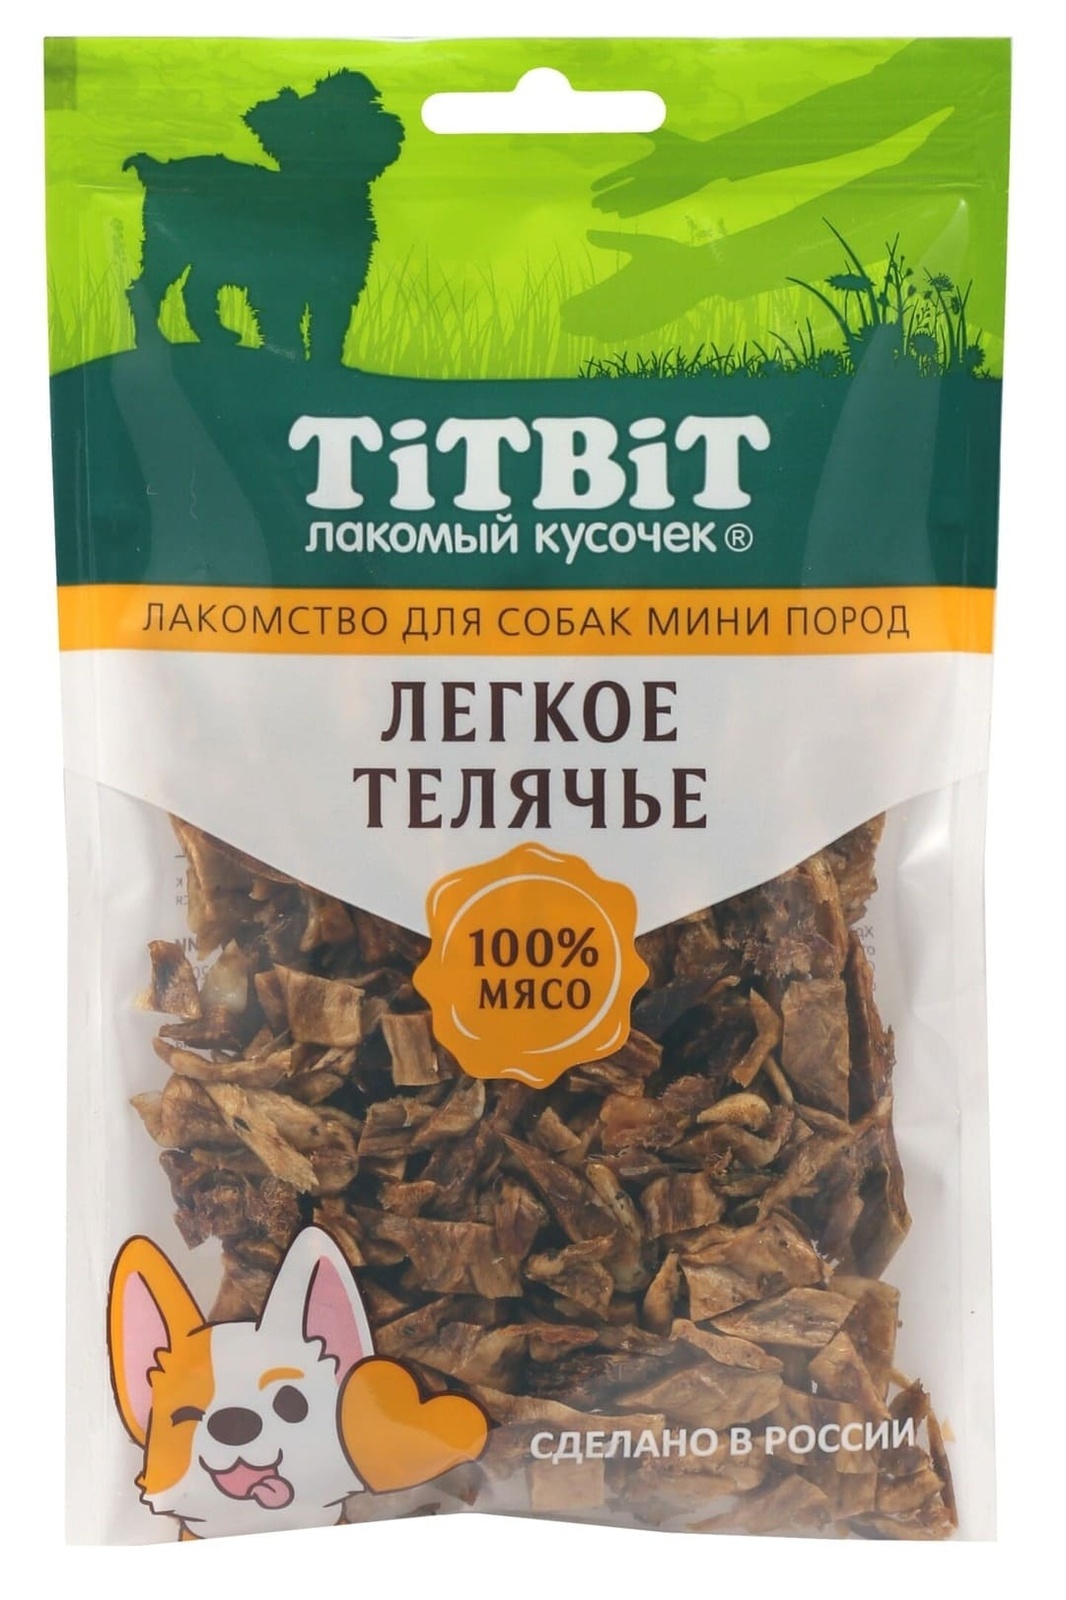 TiTBiT TiTBiT легкое телячье для собак мини пород (50 г) titbit для маленьких собак легкое телячье 010754 0 05 кг 34687 18 шт